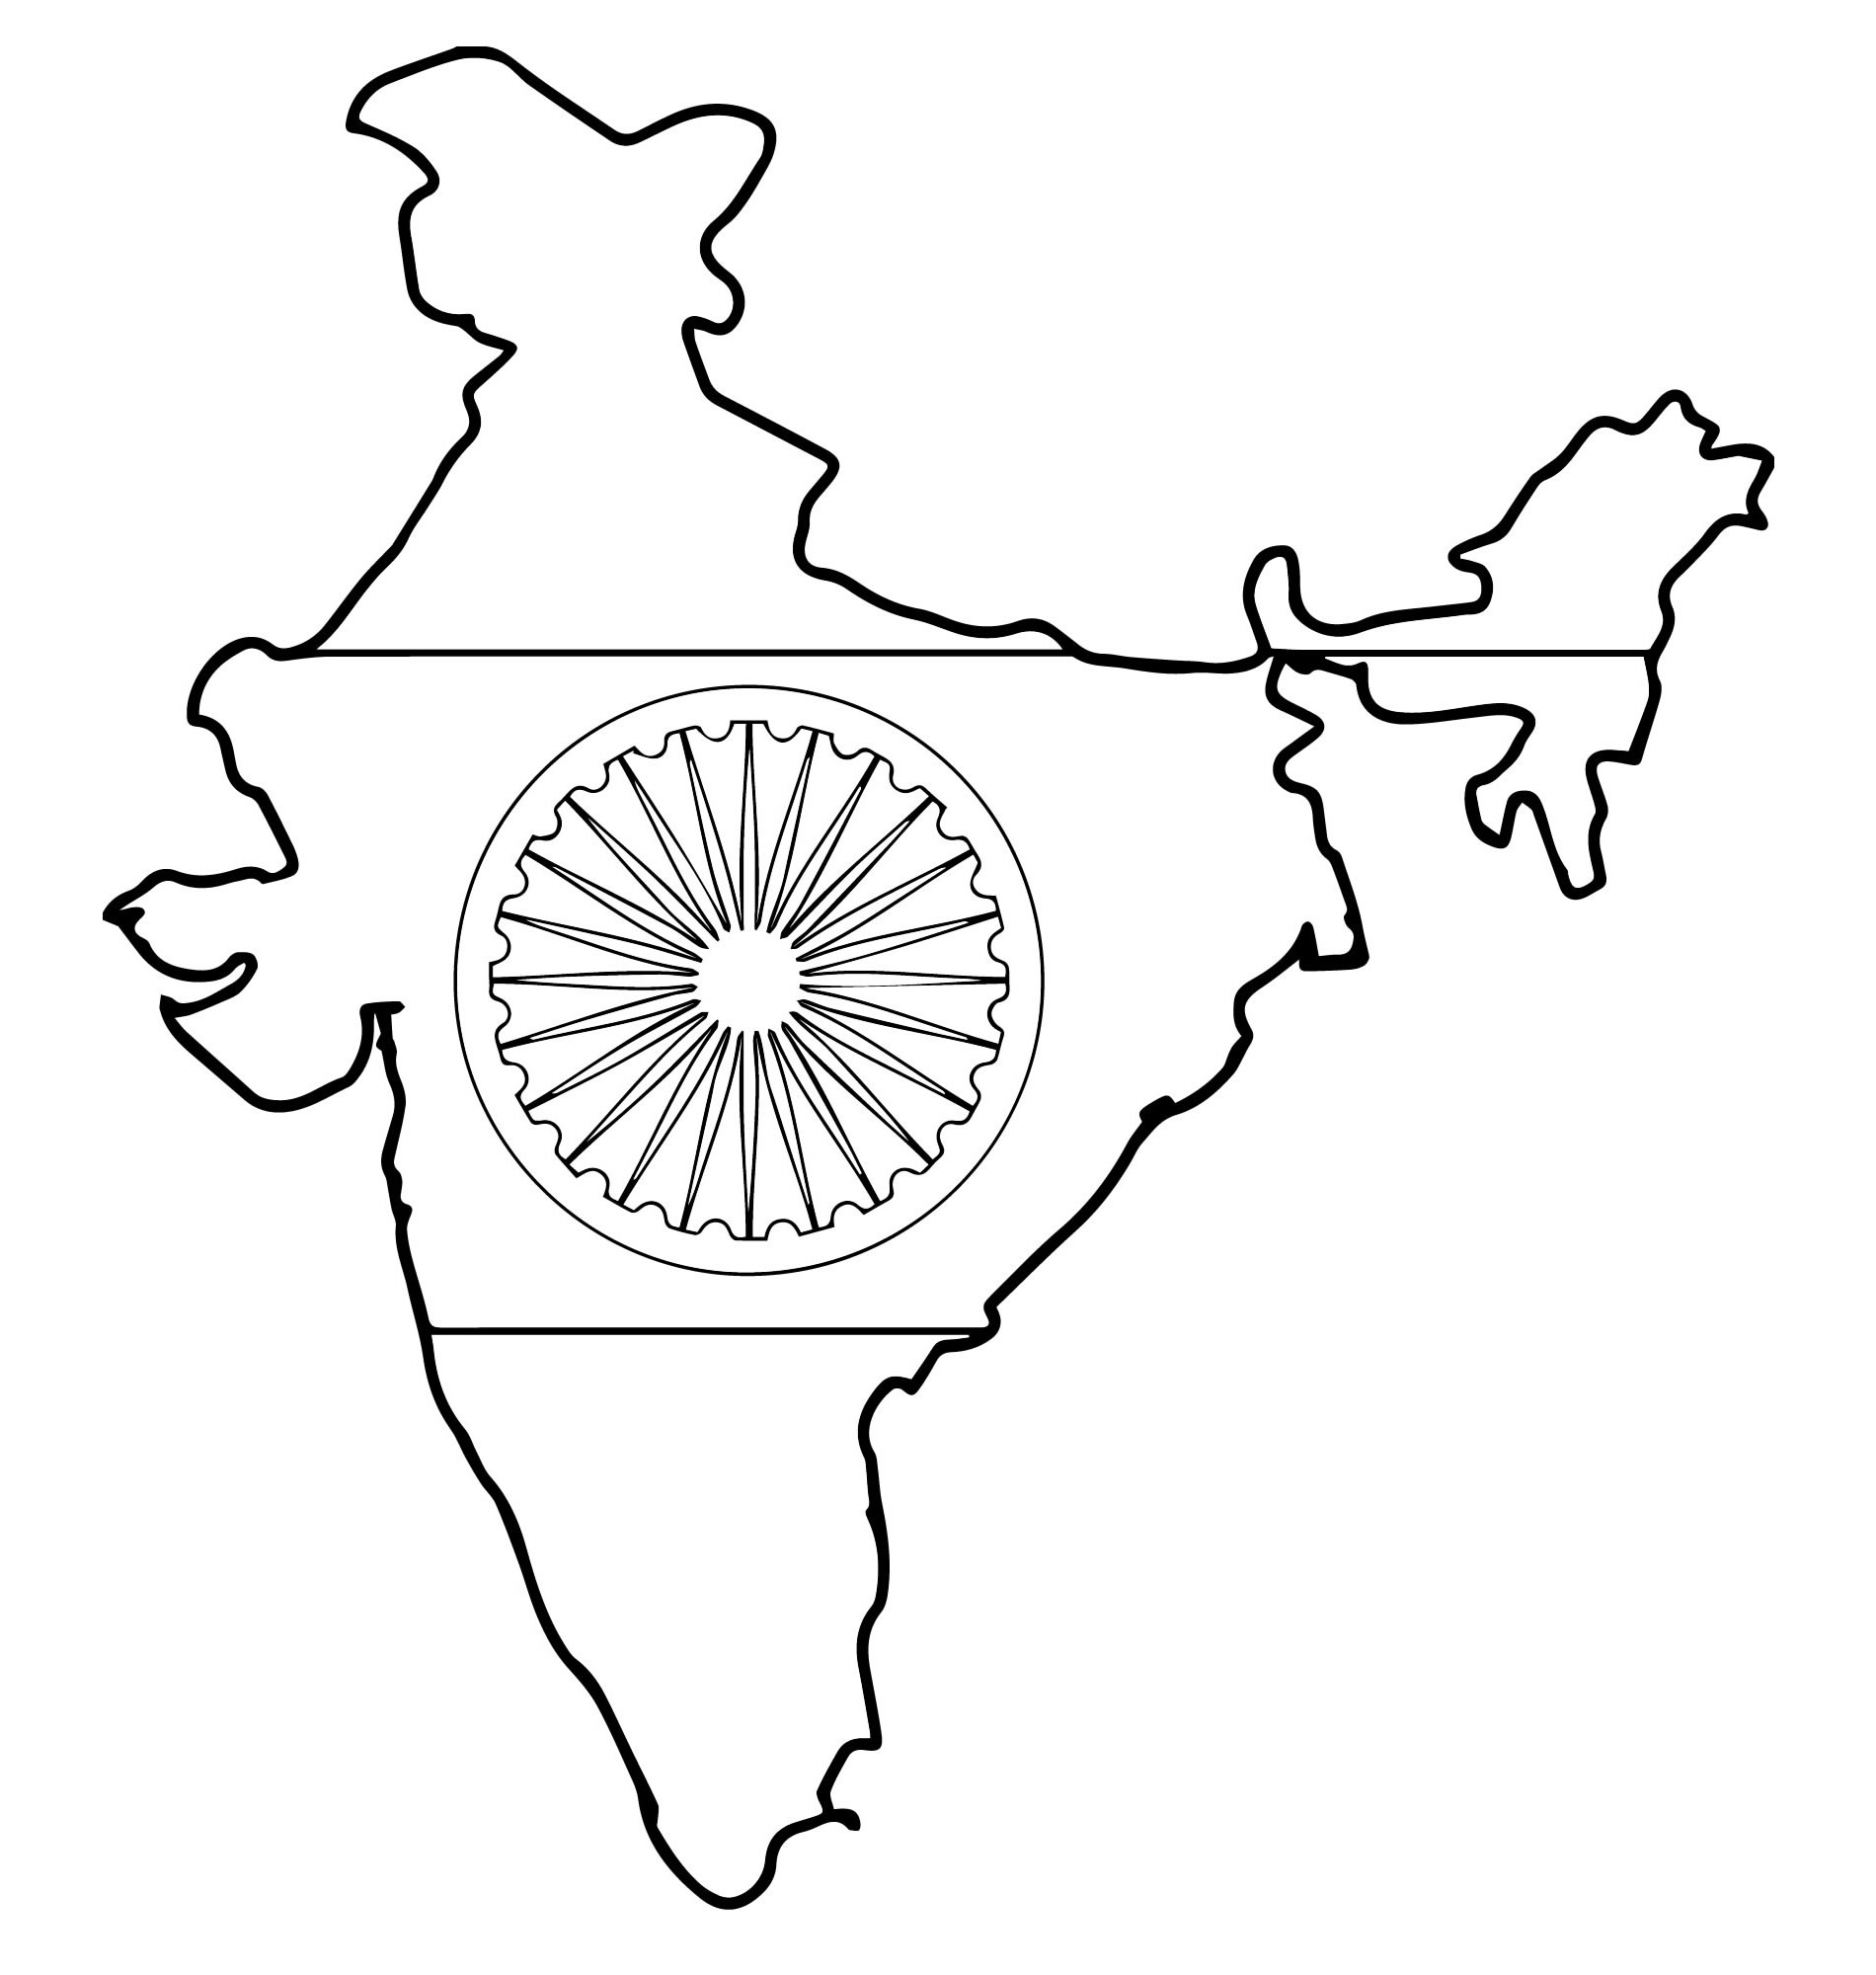 Карта Индии раскраска для детей